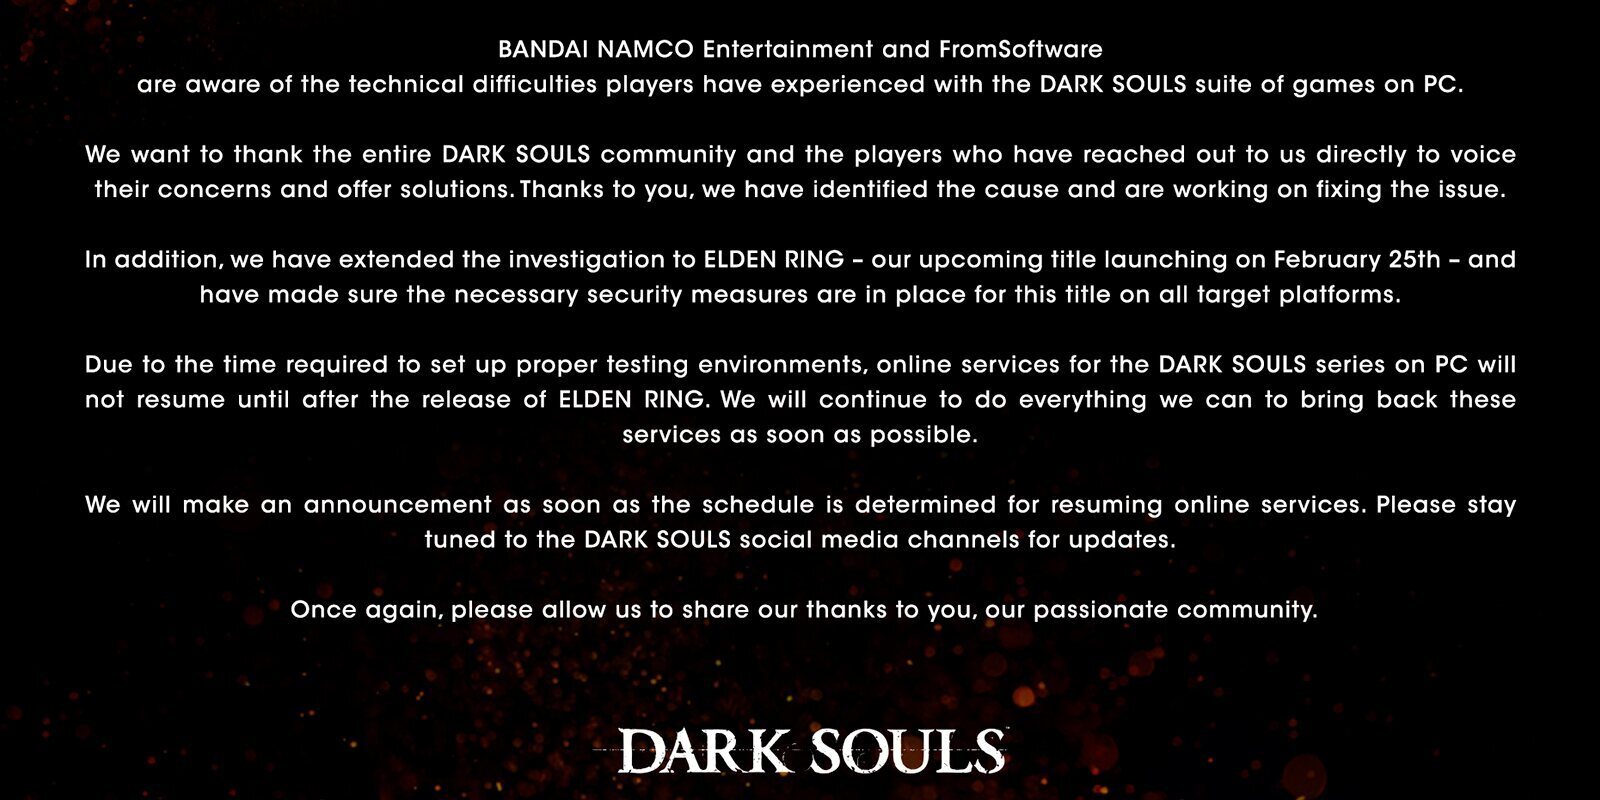 Los servidores de 'Dark Souls' de PC se mantendrán cerrados temporalmente con la salida de 'Elden Ring'